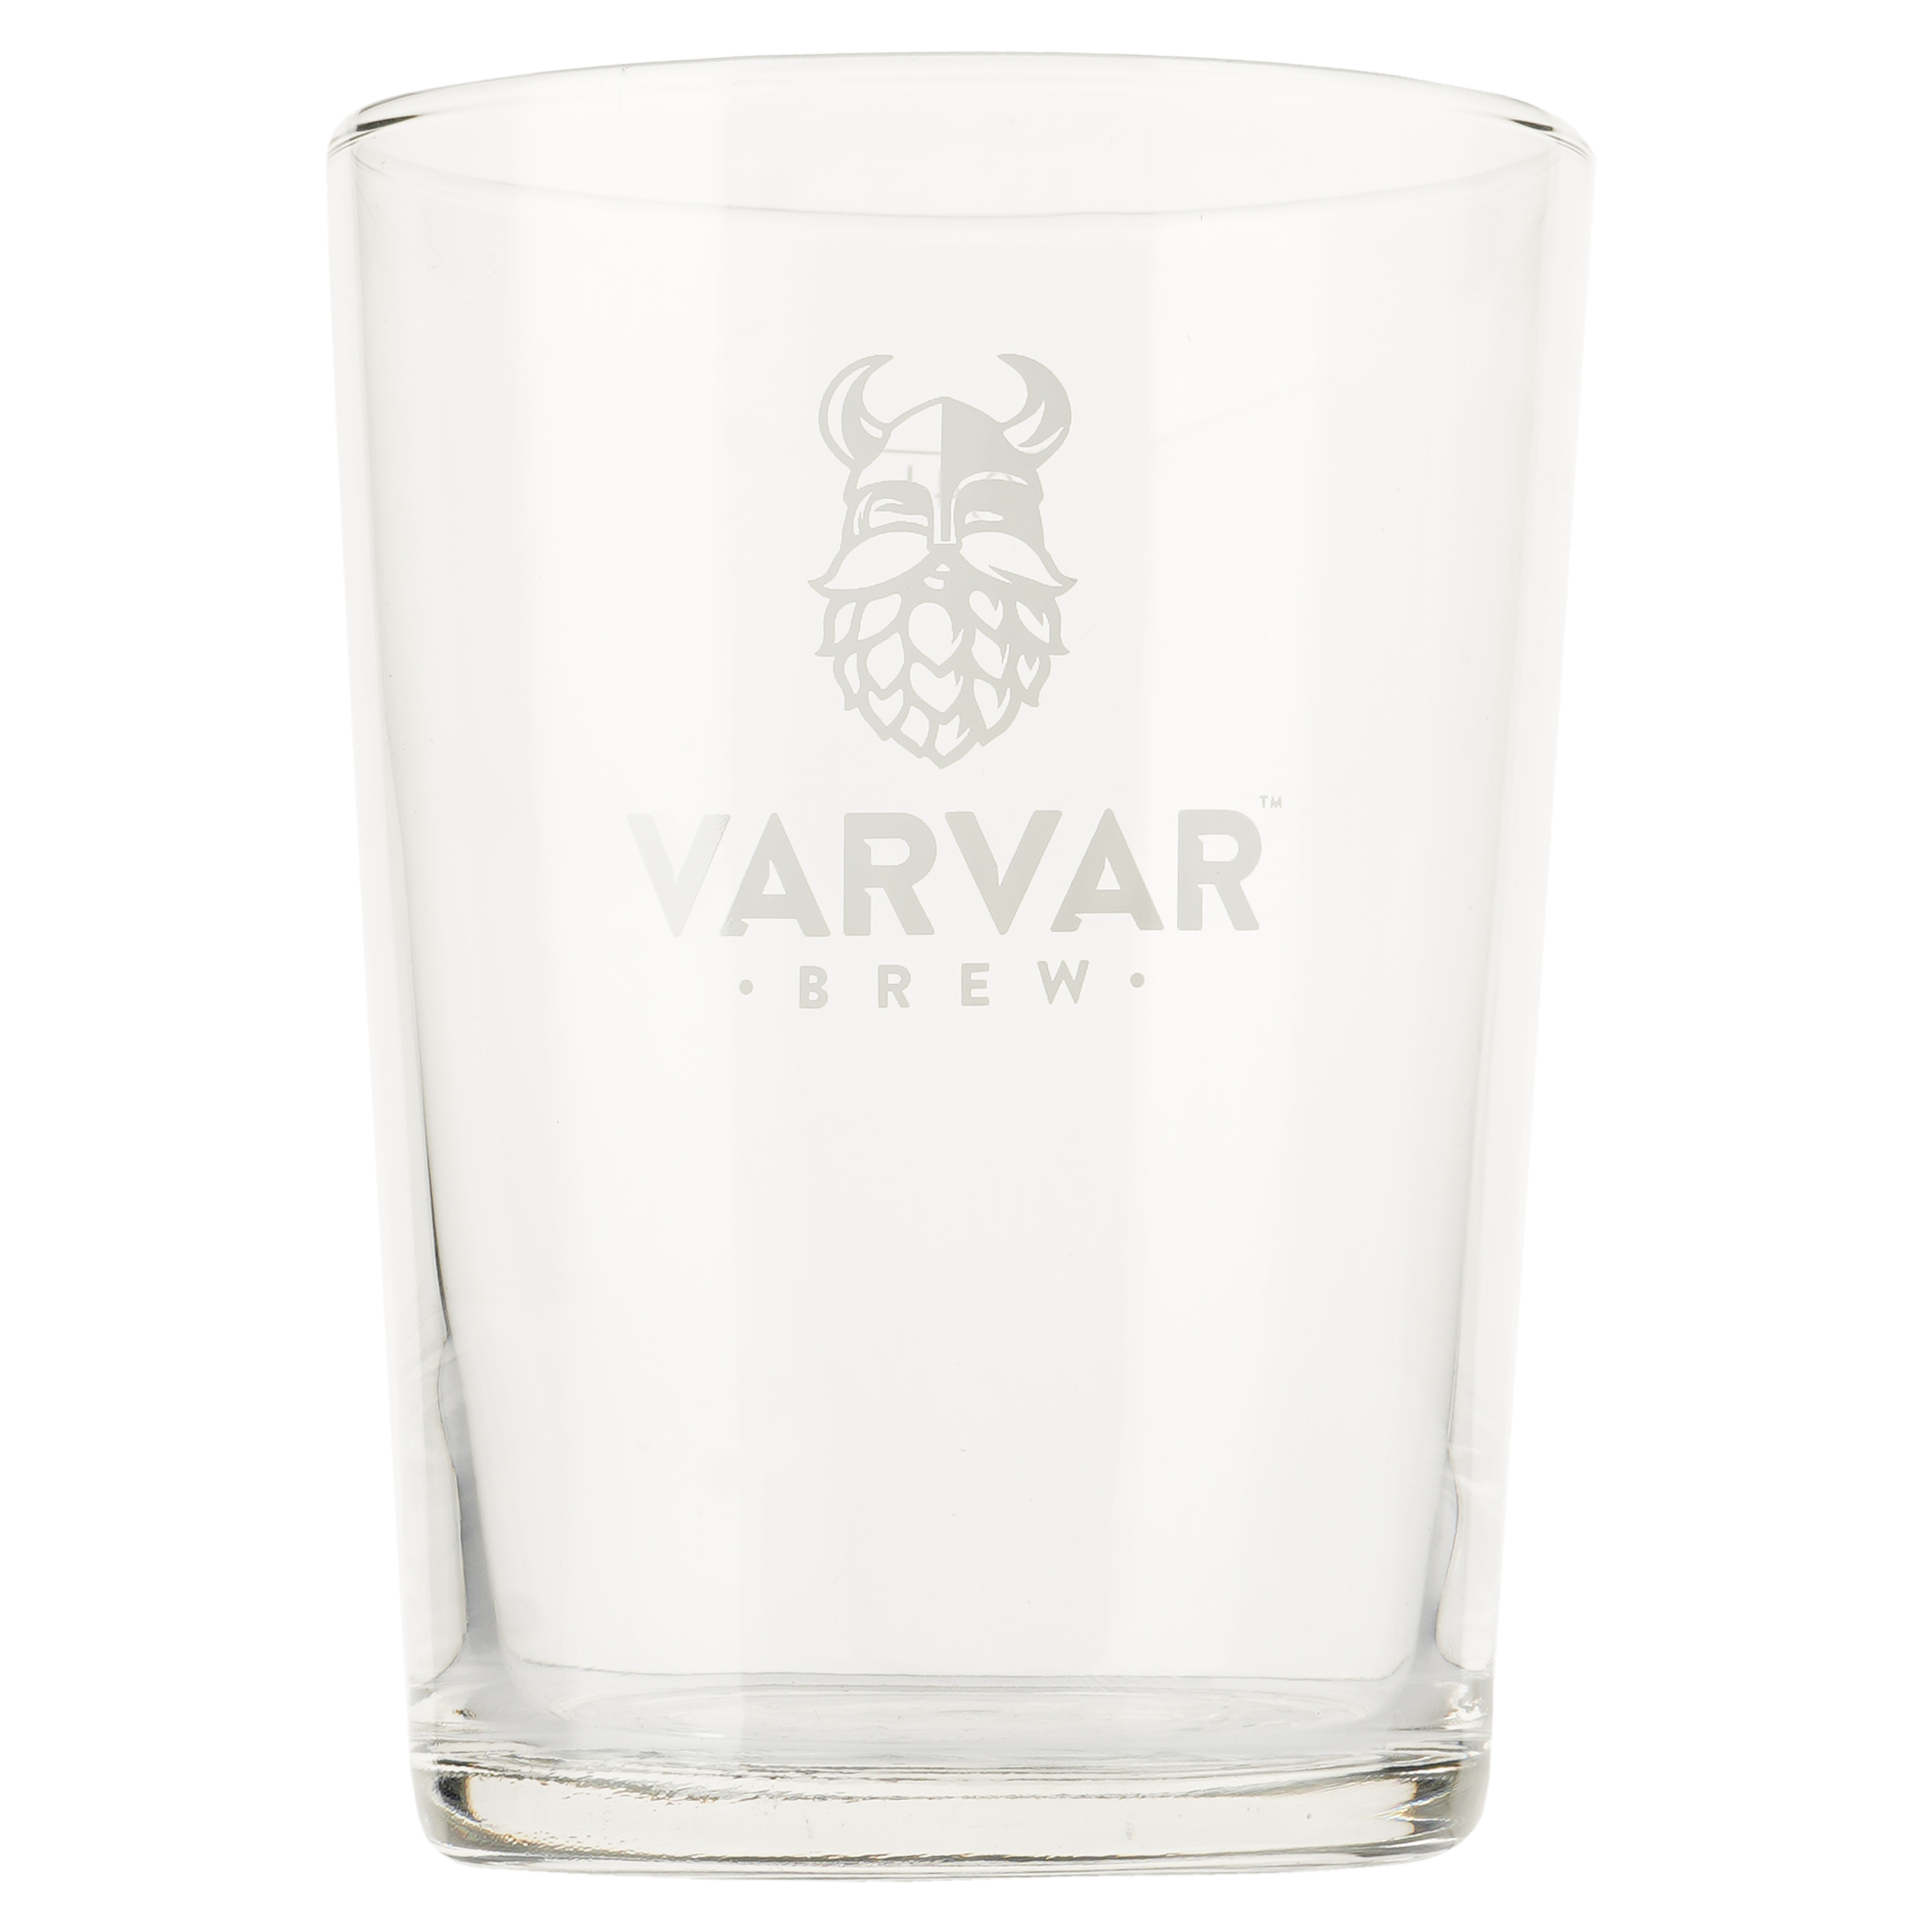 Набор пива Varvar Mixer Set (10 шт. по 0,33 л), 0,5-6,9%, 3,3 л + бокал Bodega 0,4 л - фото 6